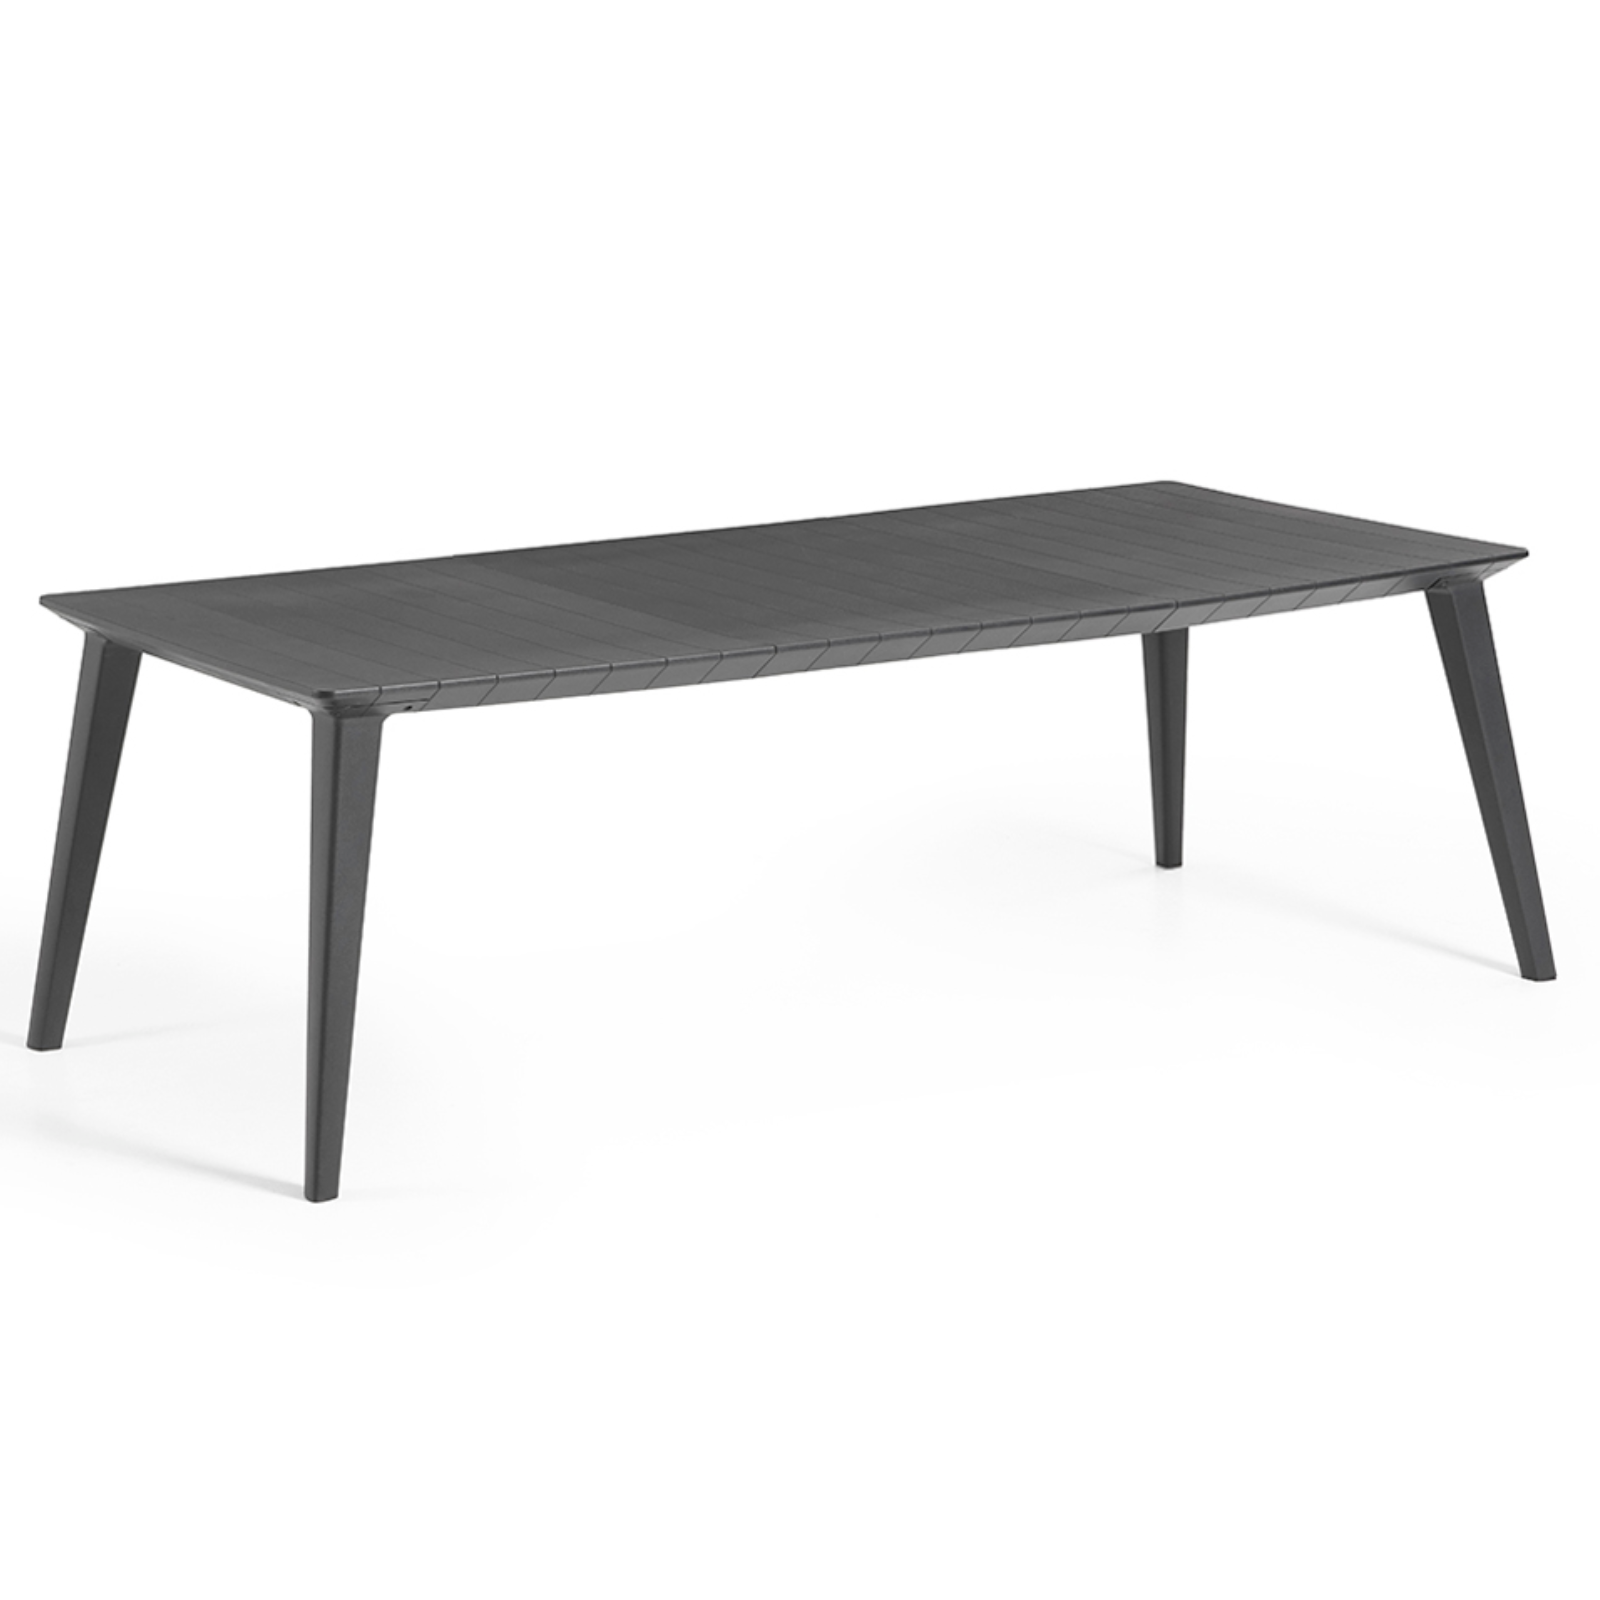 Tavolo da interno esterno allungabile estensibile nero con piano doghe effetto legno in resina antiurto